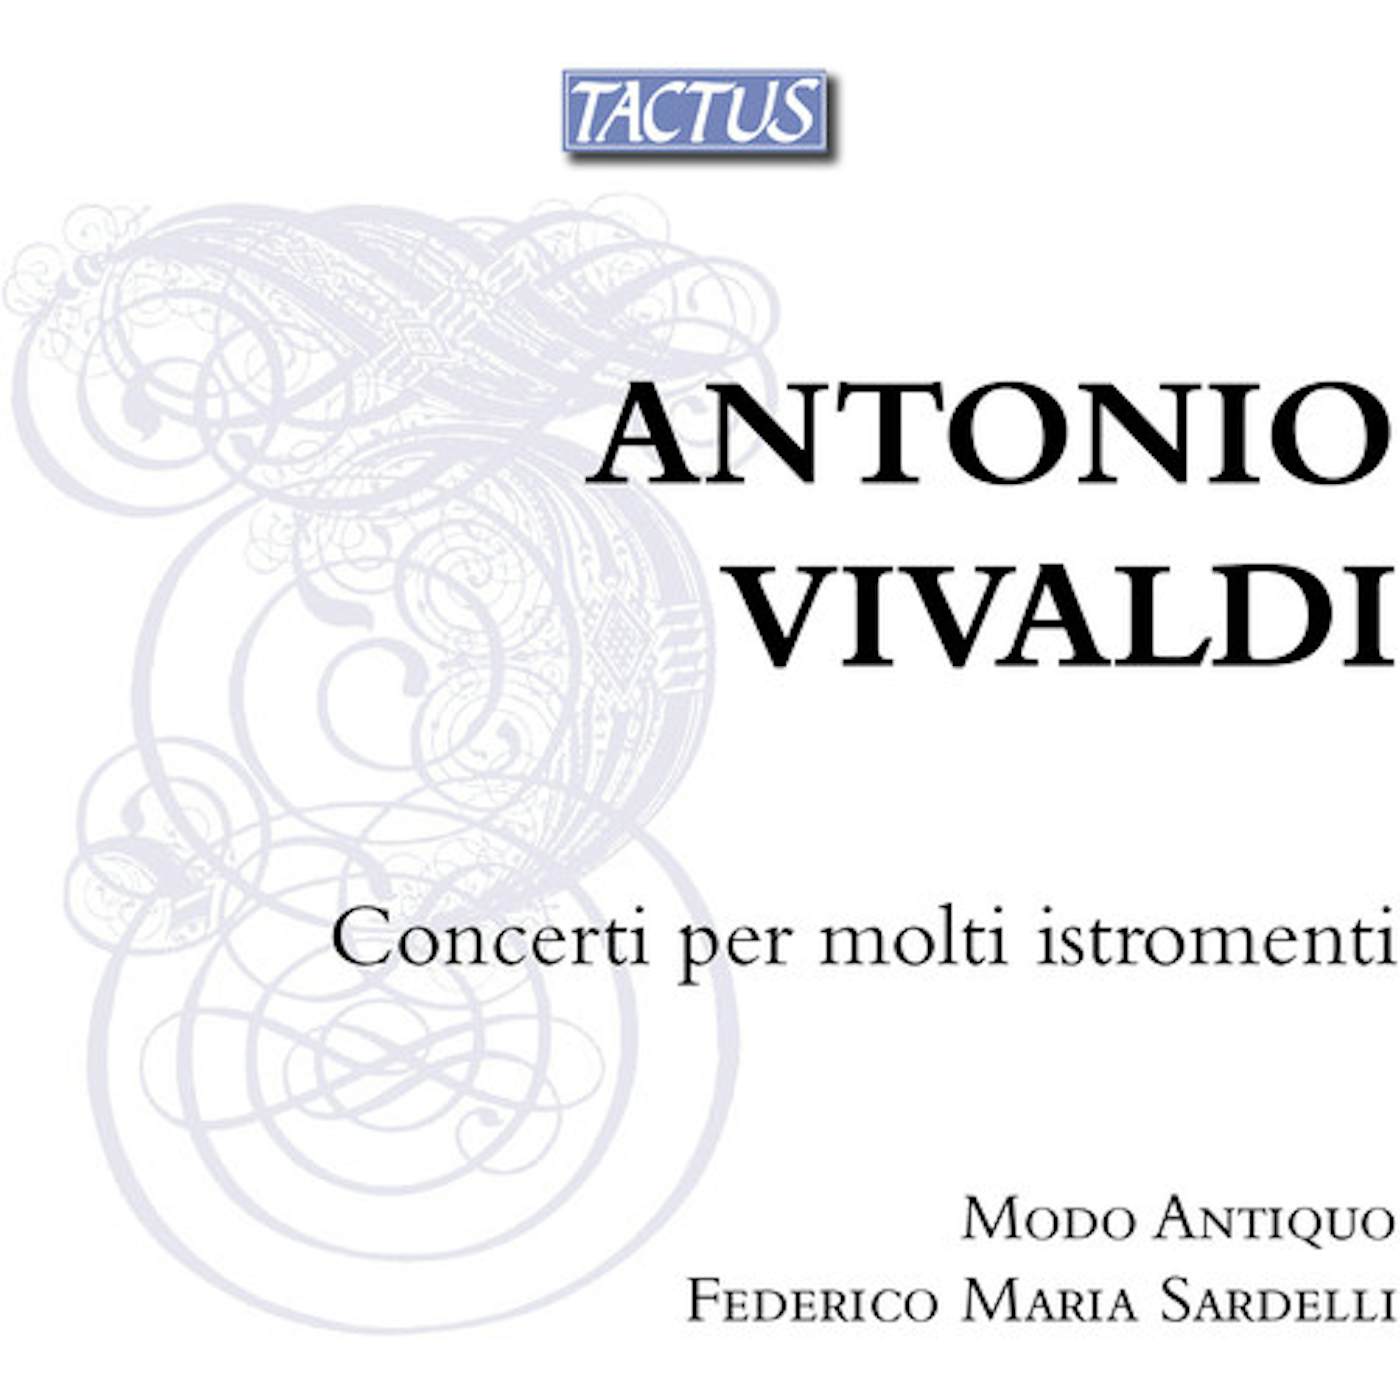 Antonio Vivaldi CONCERTI PER MOLTI ISTROMENTI CD